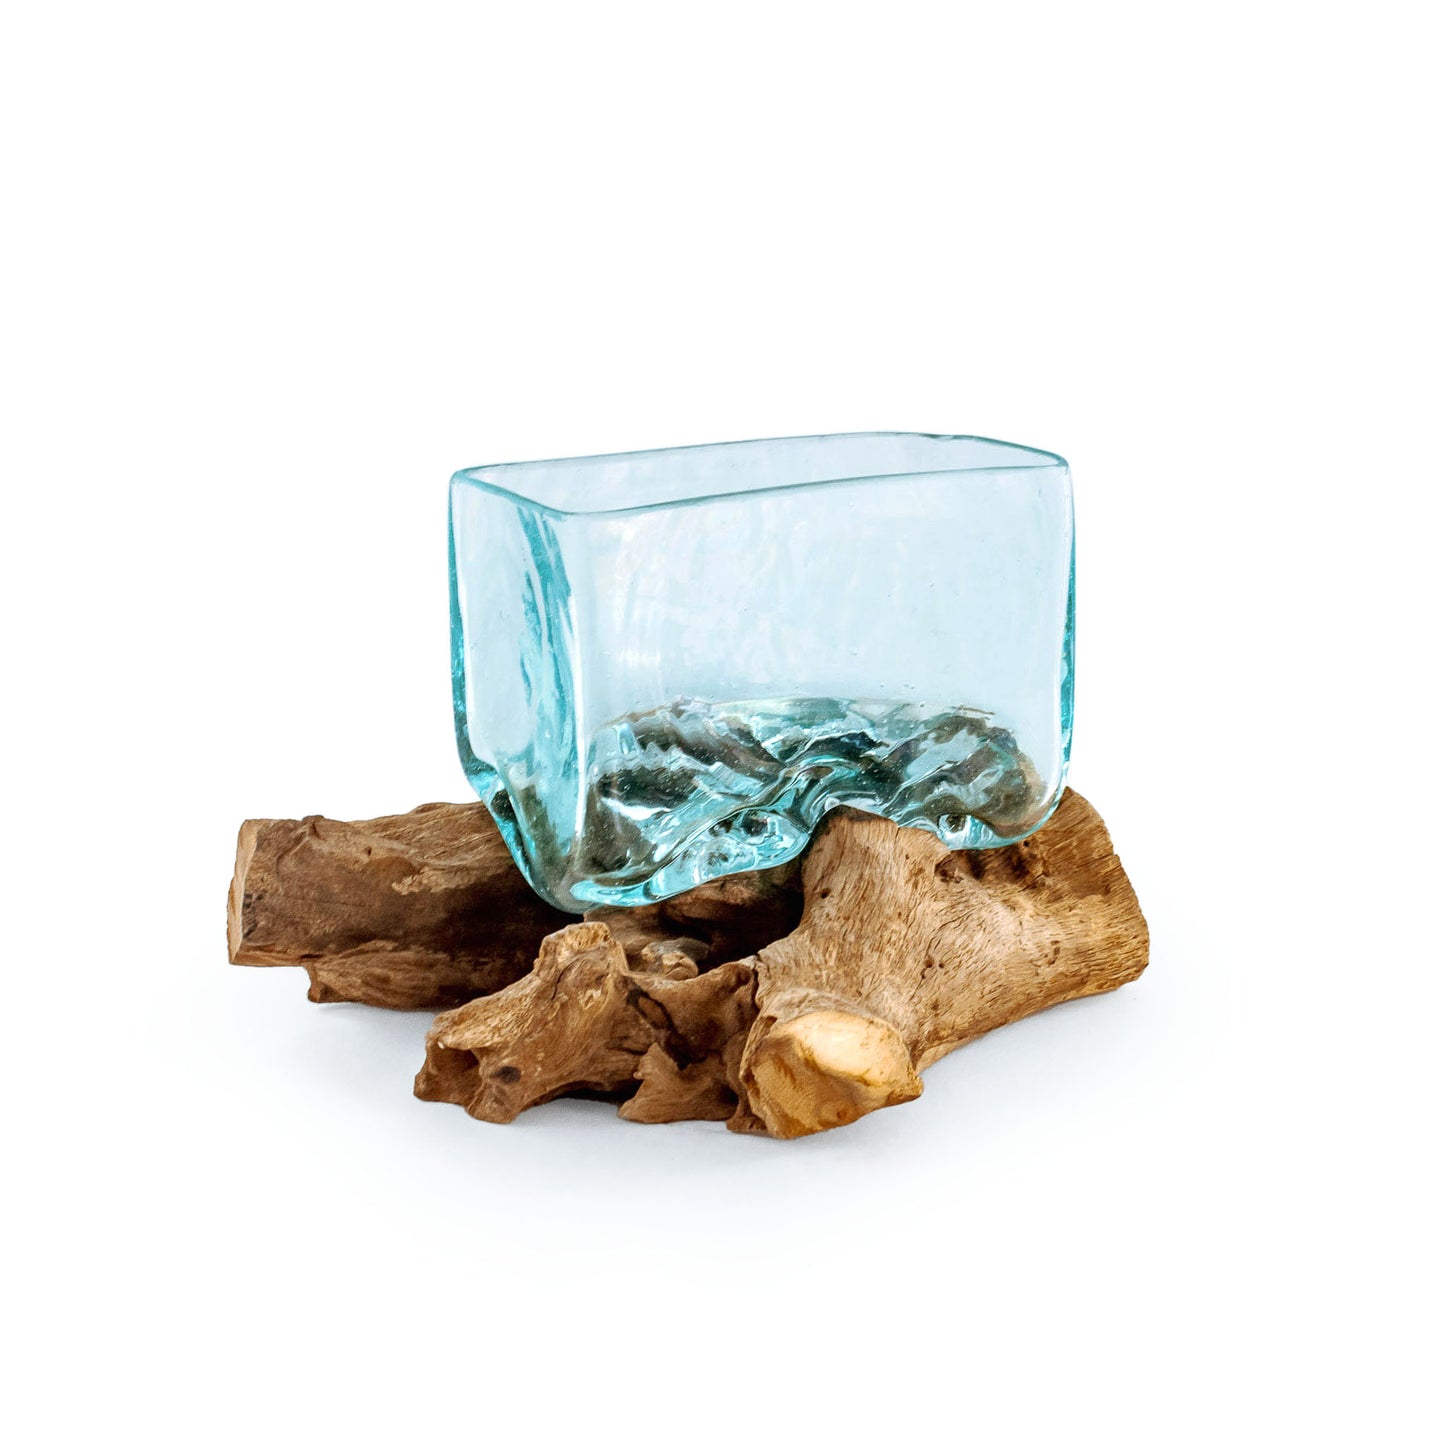 Molten Glass Driftwood Aquarium with Moss Balls (Rectangle)